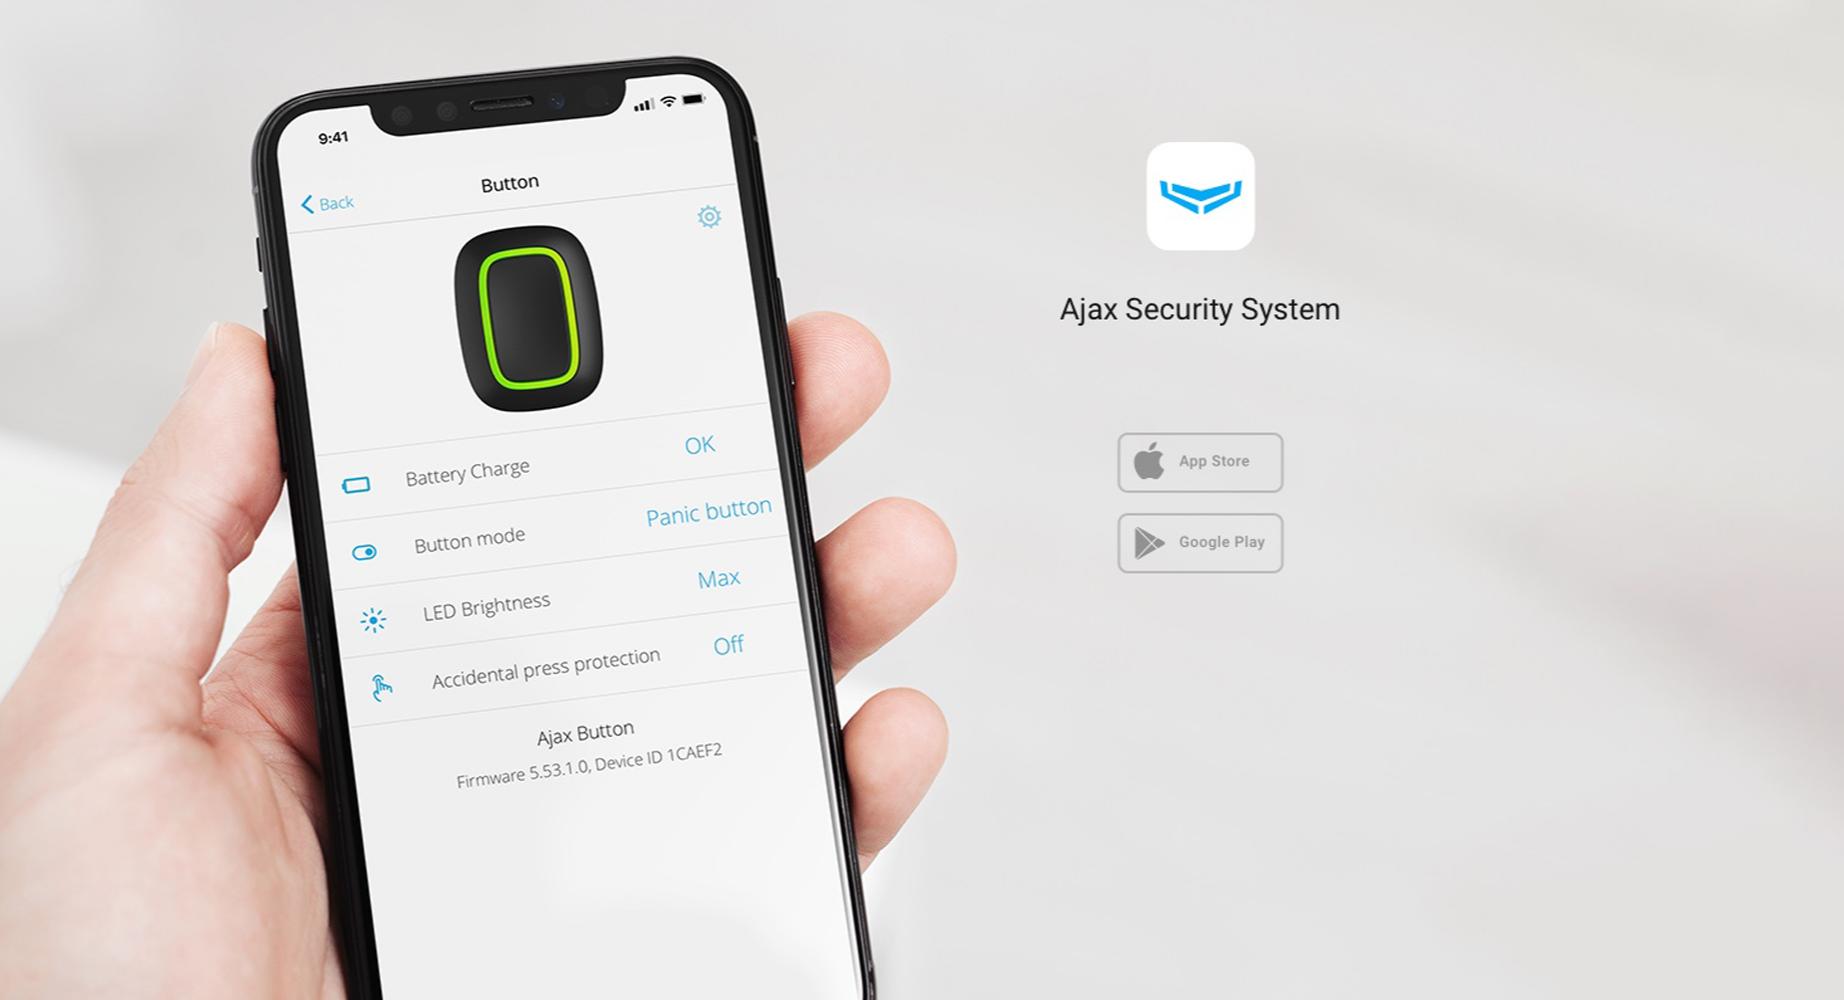 Butonl de panică apare în aplicația Ajax Security System